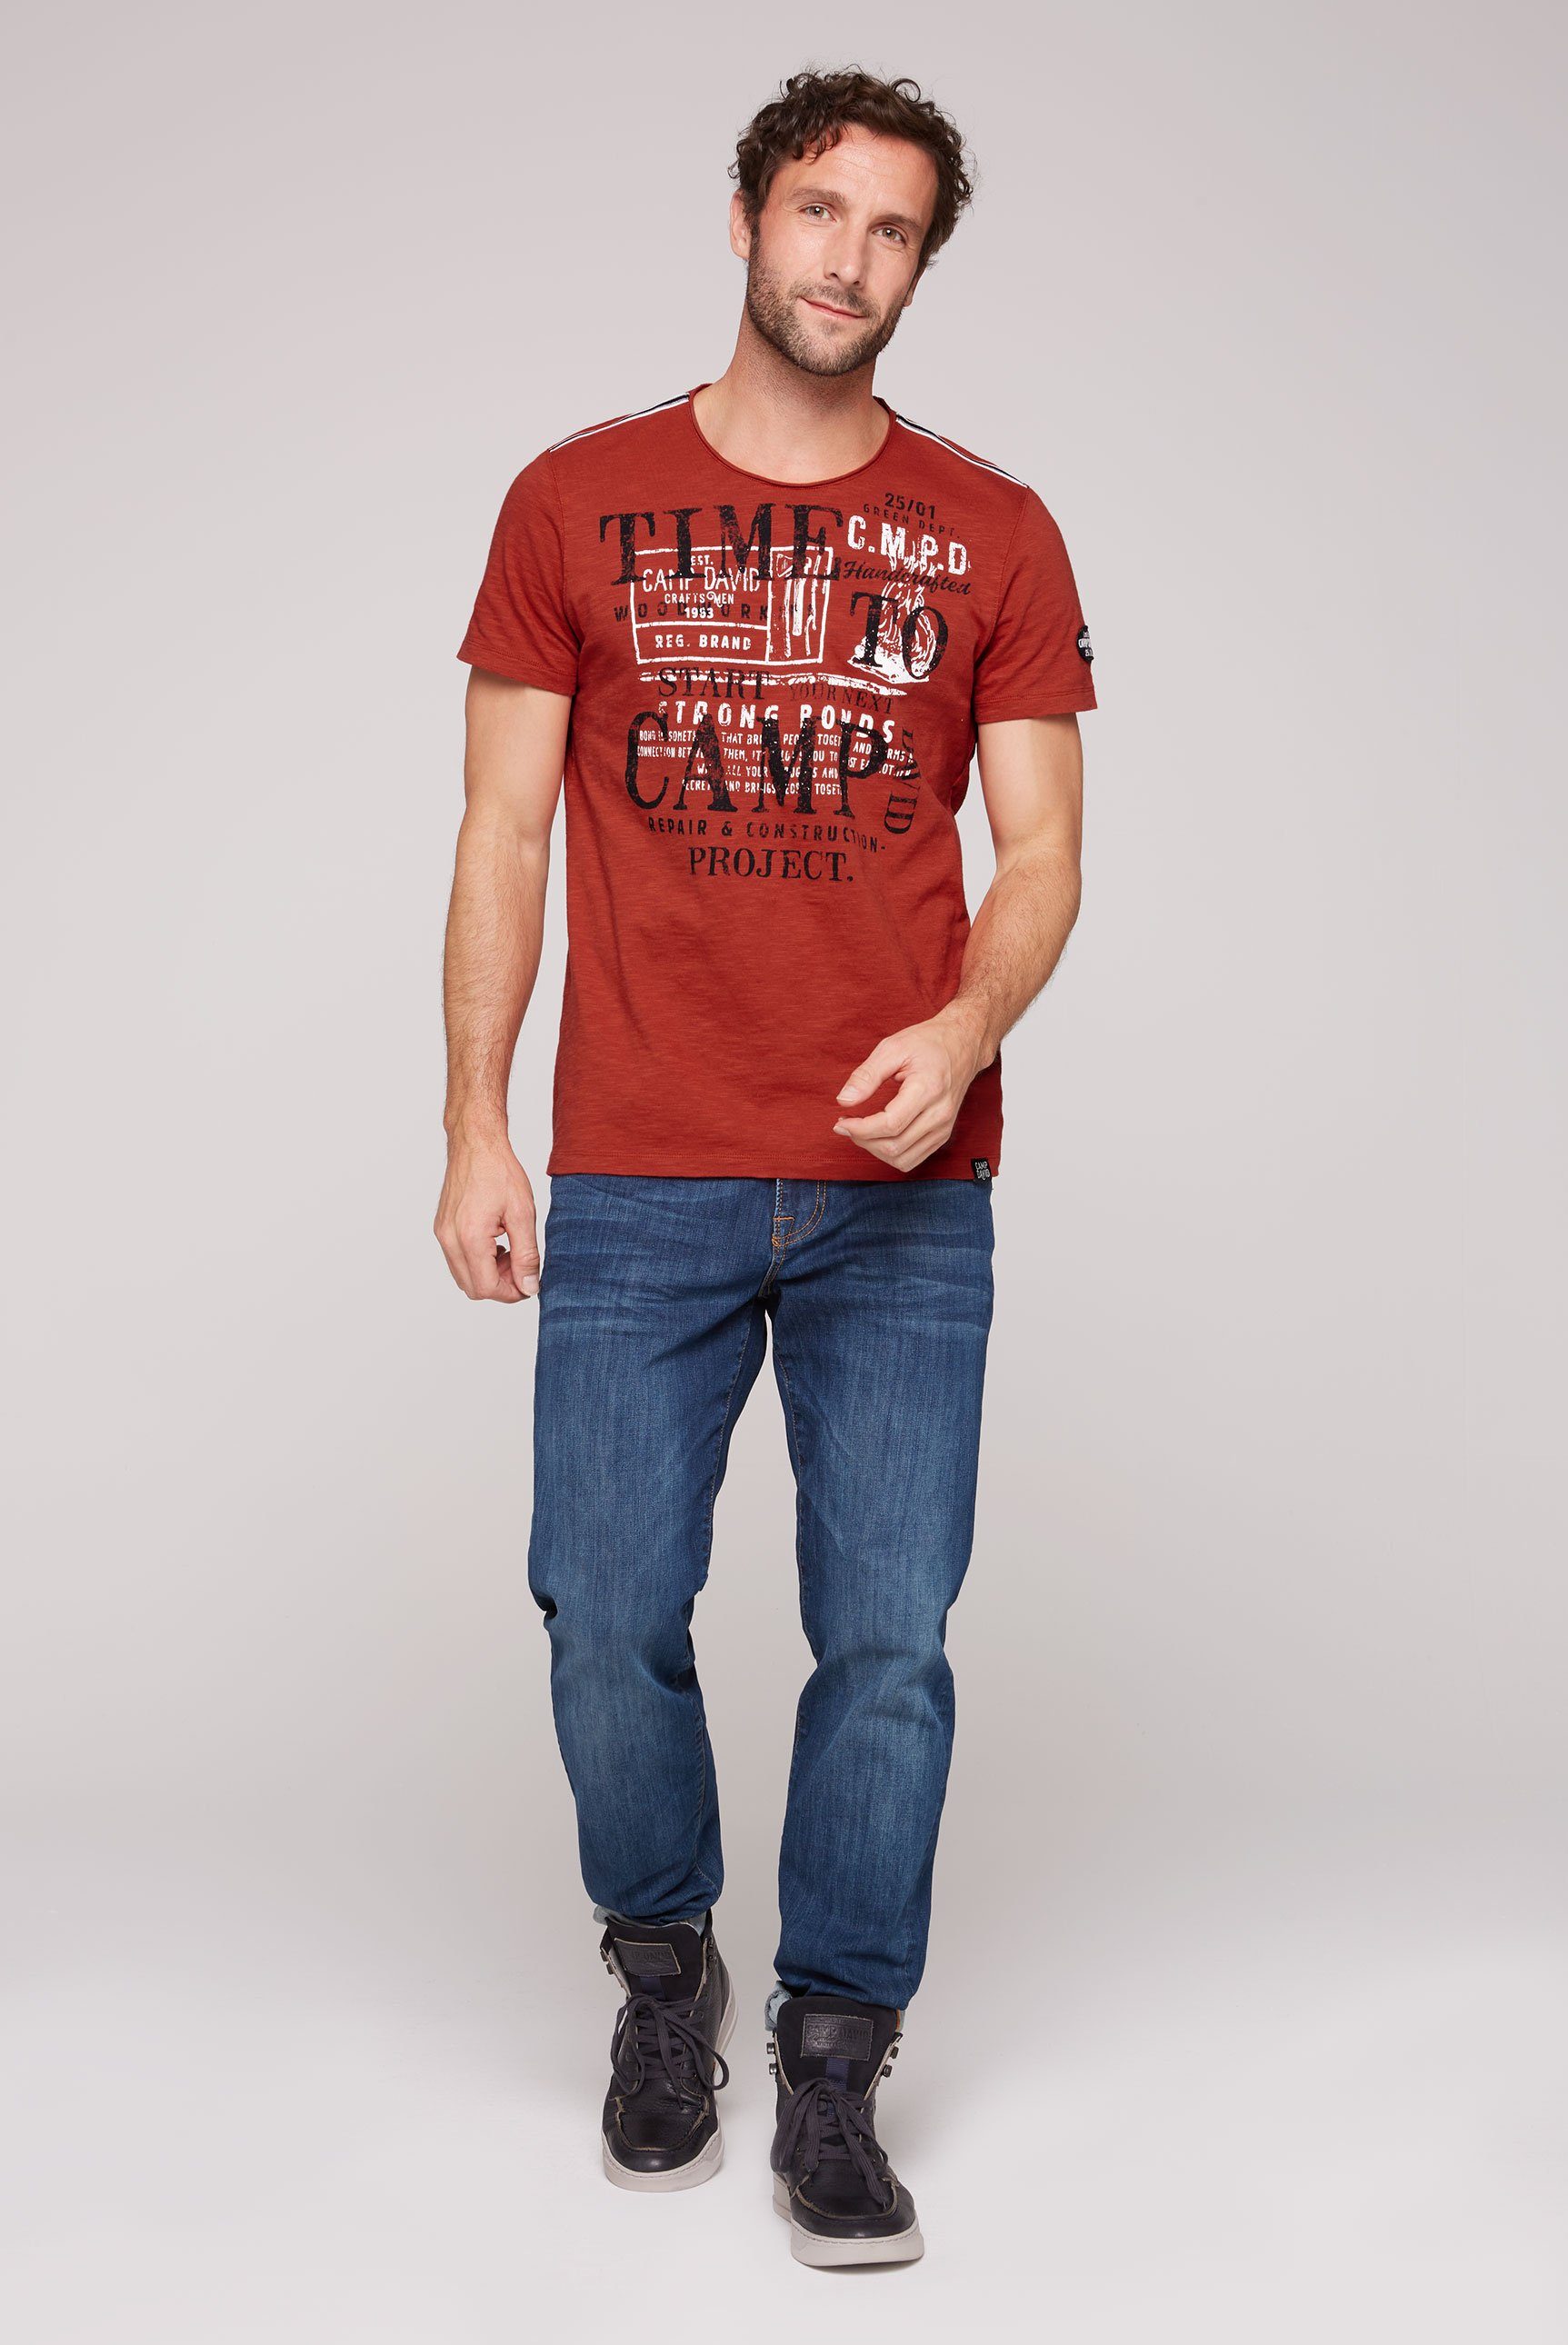 CAMP DAVID T-Shirt mit Logoprints vorne red vintage hinten und